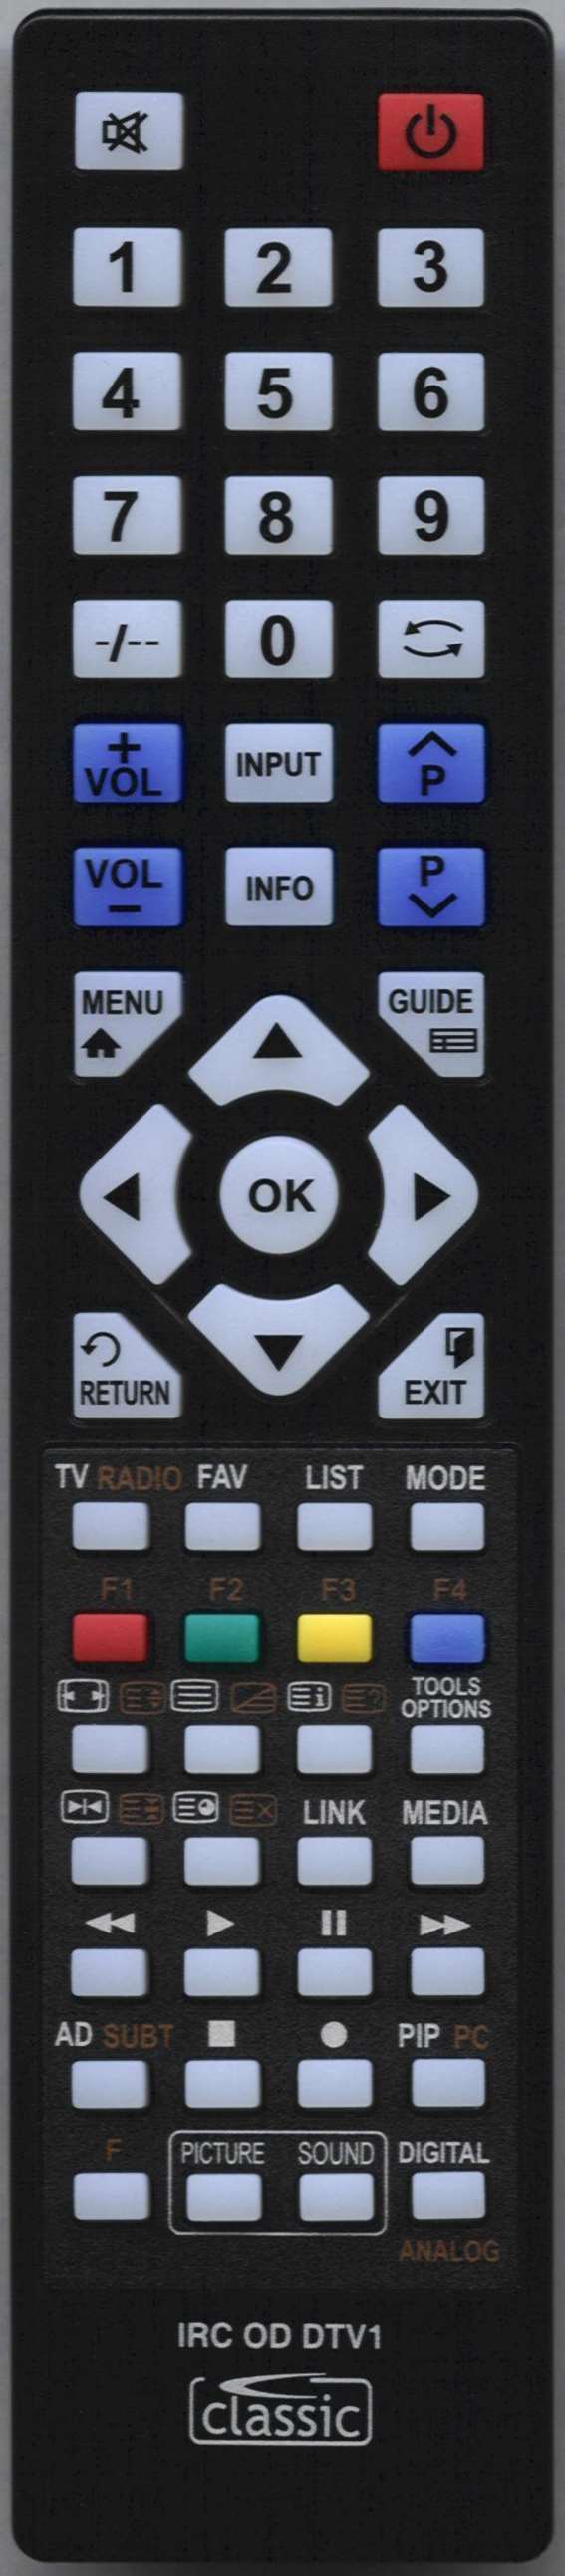 AOC L27W551T Remote Control